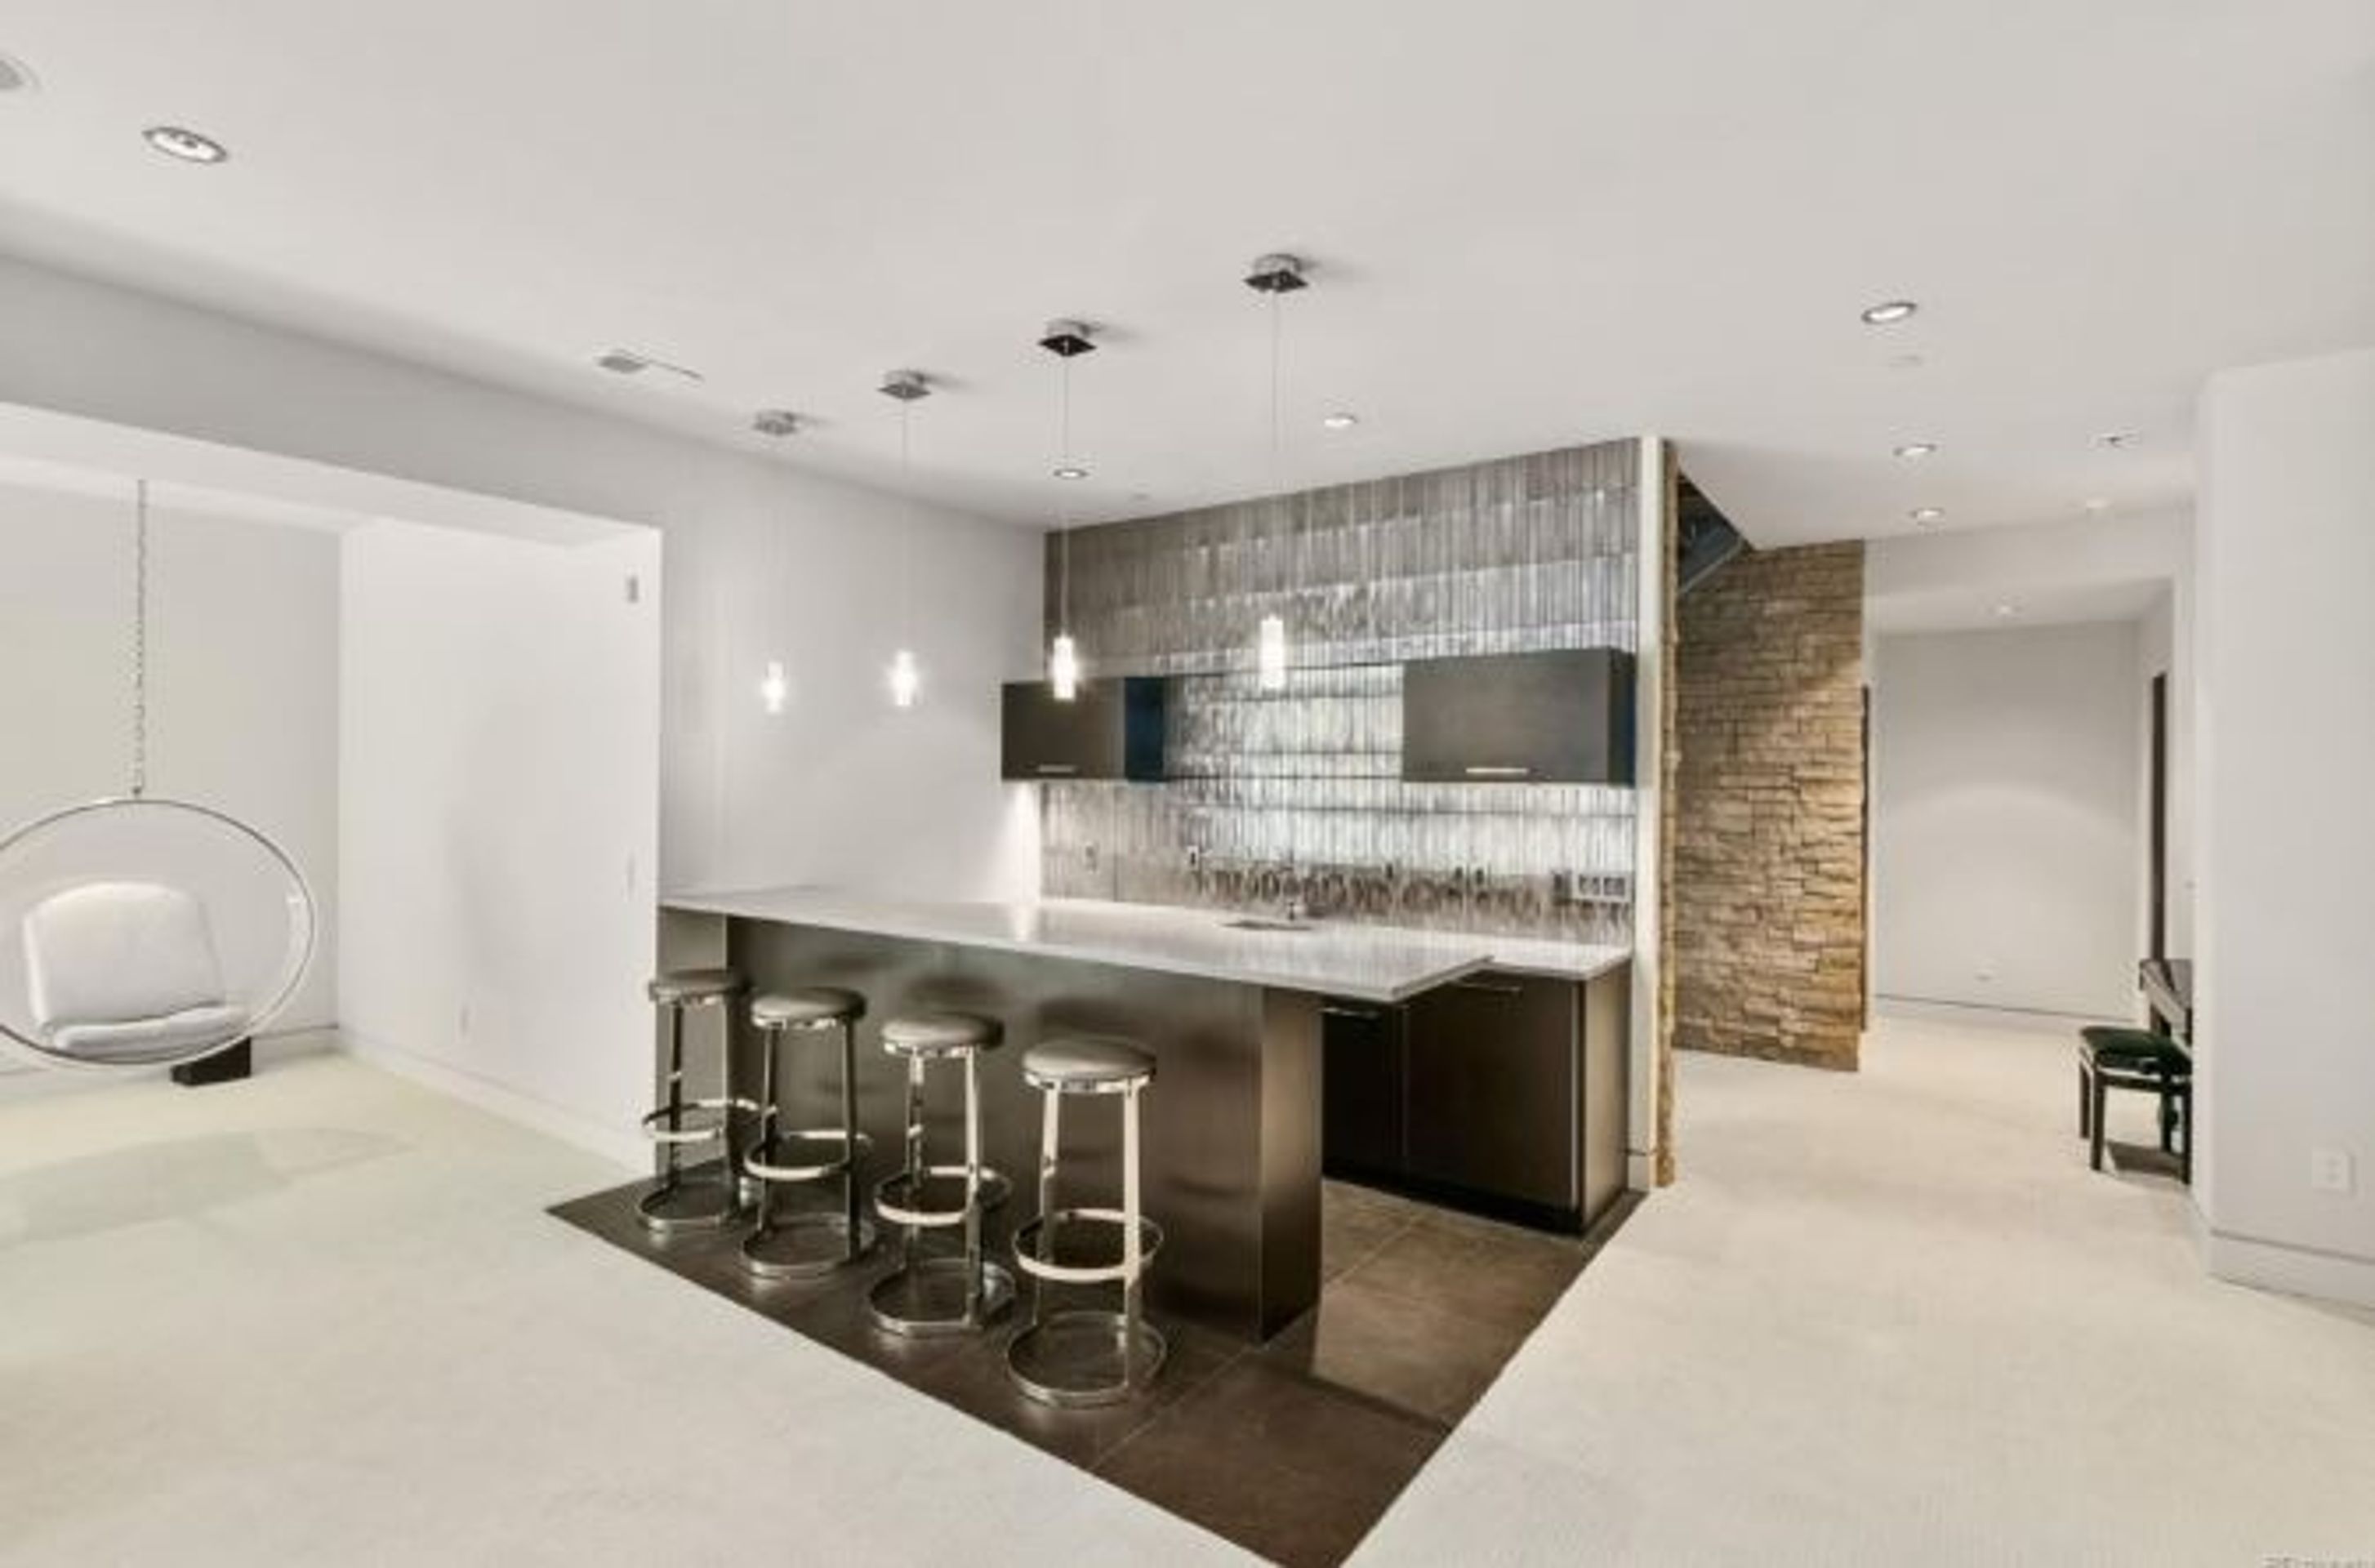 Luxusní sídlo Milana Hejduka je na prodej - GALERIE: Milan Hejduk prodává svůj dům v Coloradu (2/6)